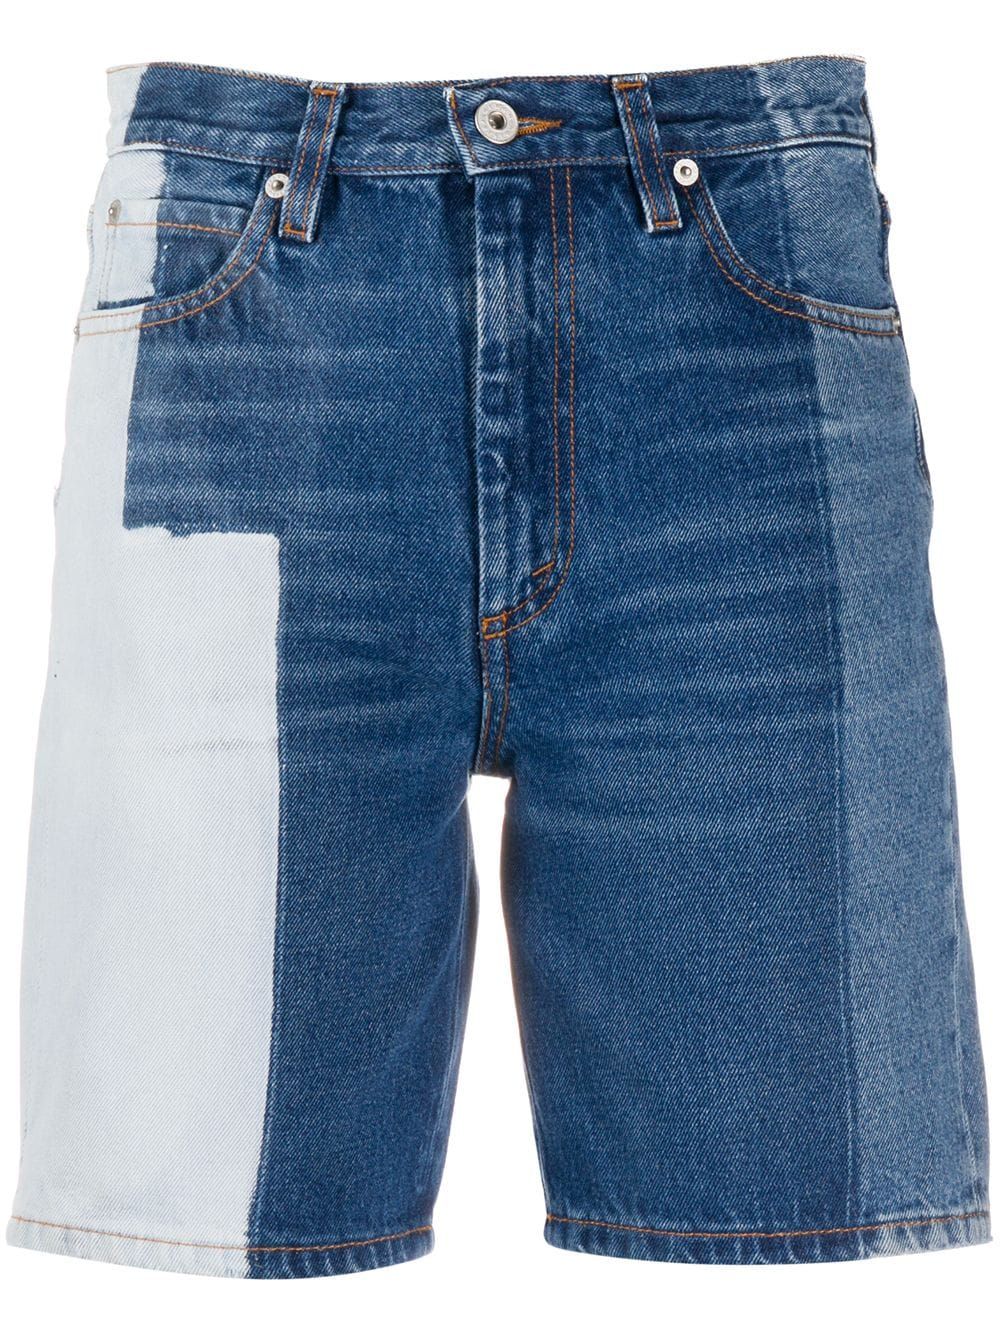 female short jeans